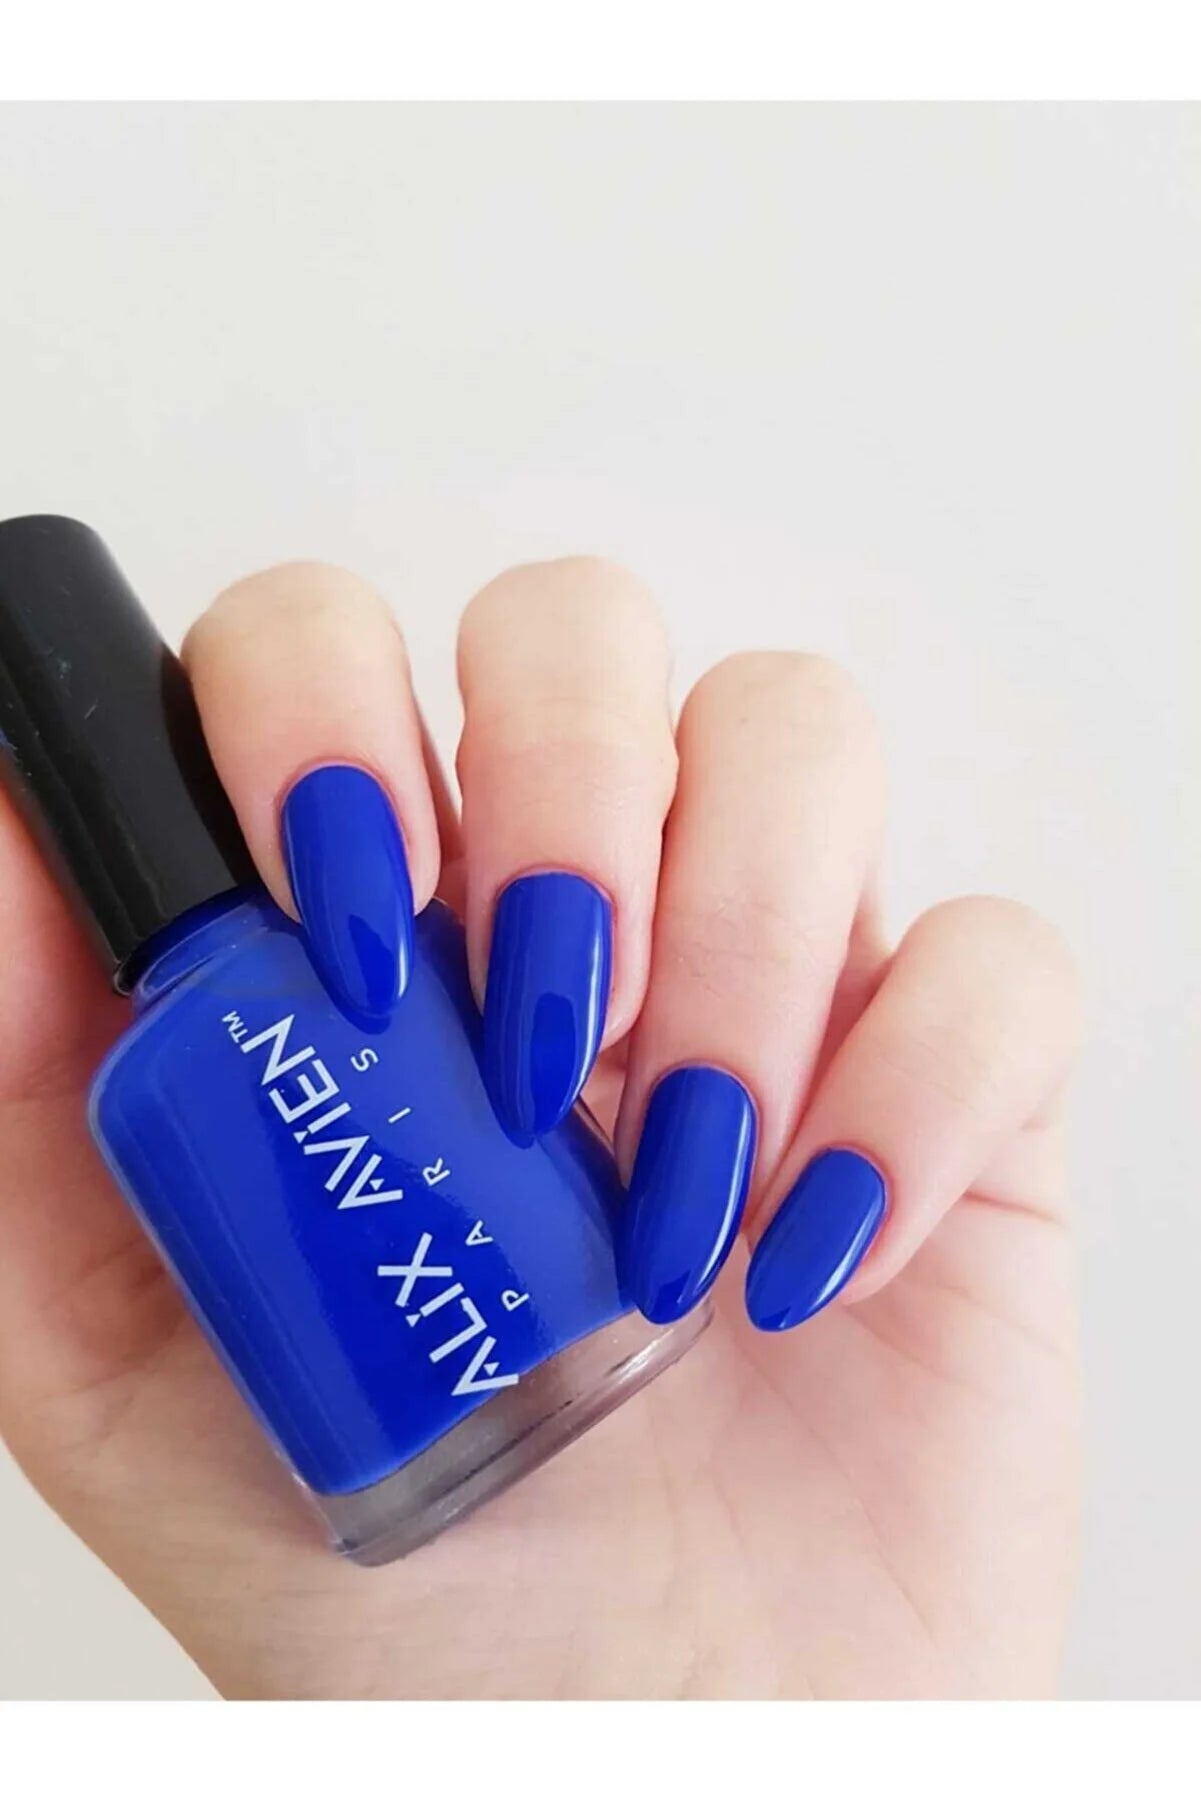 Alix Avien Dark Blue Nail Polish 24 - Long Lasting Fast Drying